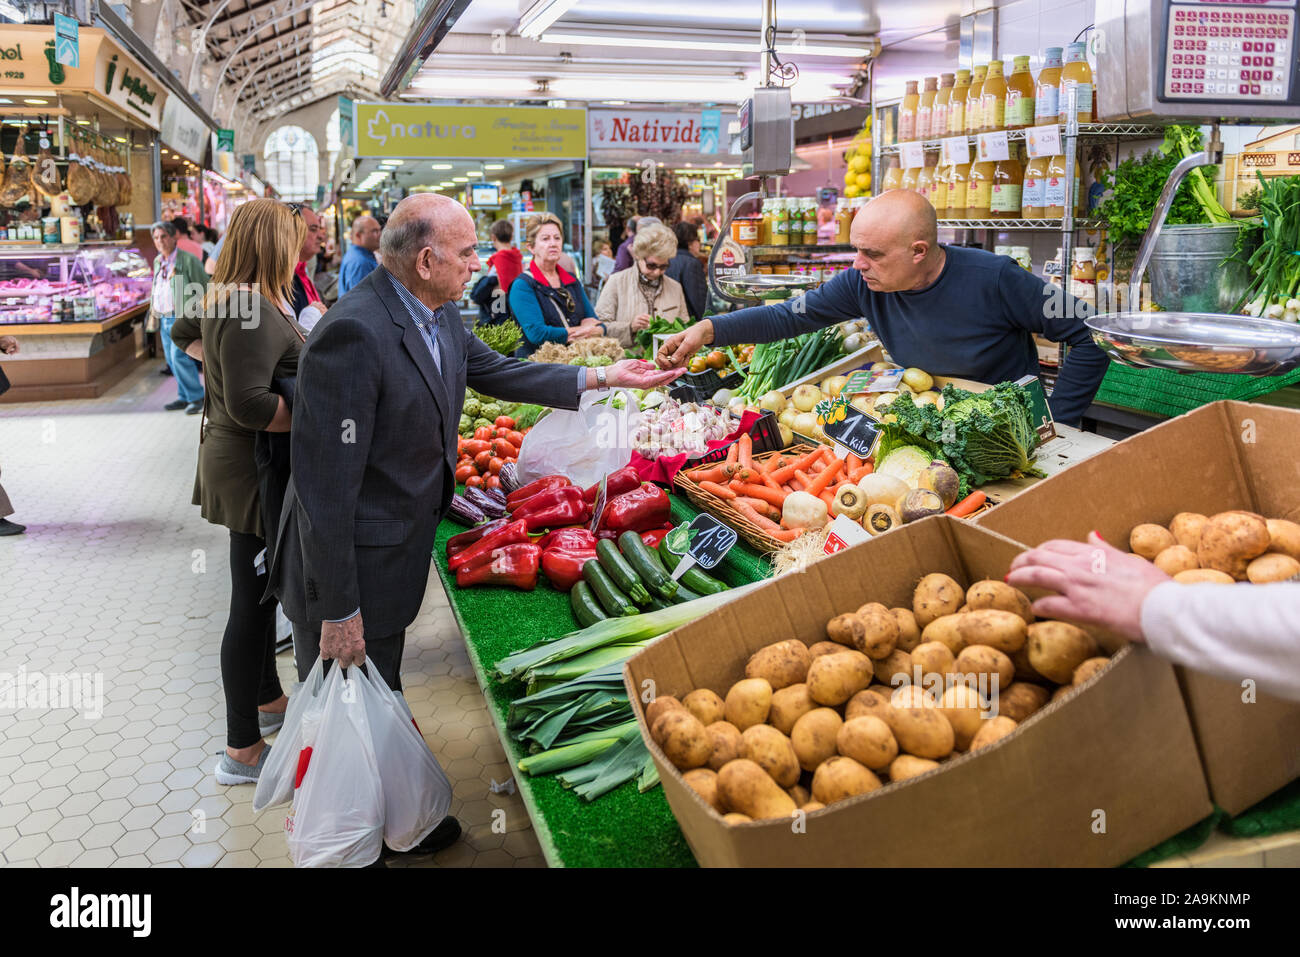 L'homme reçoit changer après l'épicerie à la place des marchands dans le Mercado Central (Marché Central) à Valence Espagne Banque D'Images